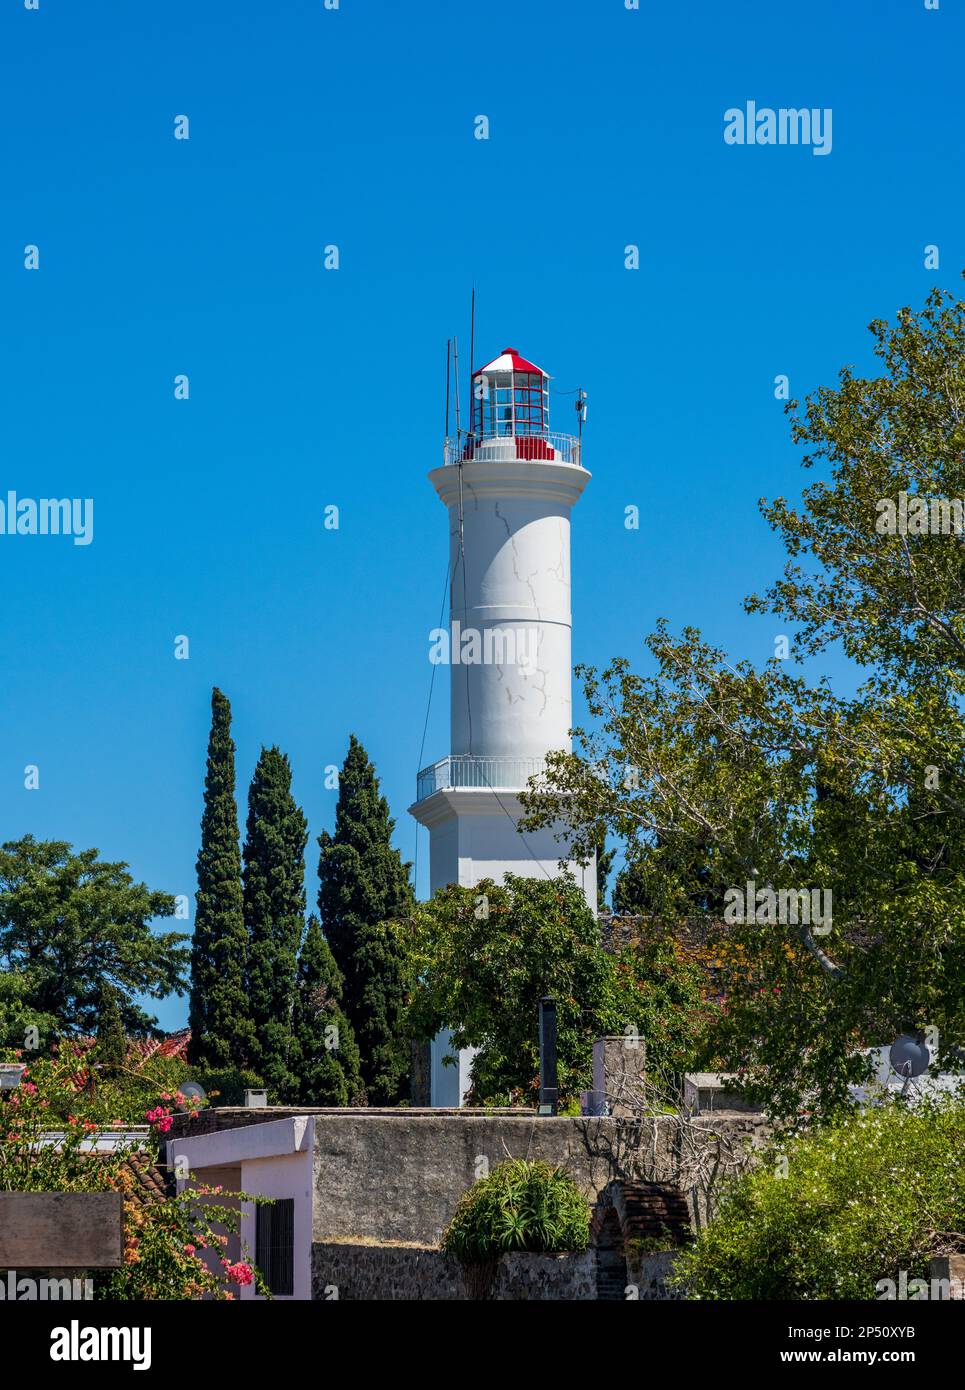 Le phare se dresse au-dessus des jardins de l'UNESCO Colonia del Sacramento Uruguay Banque D'Images